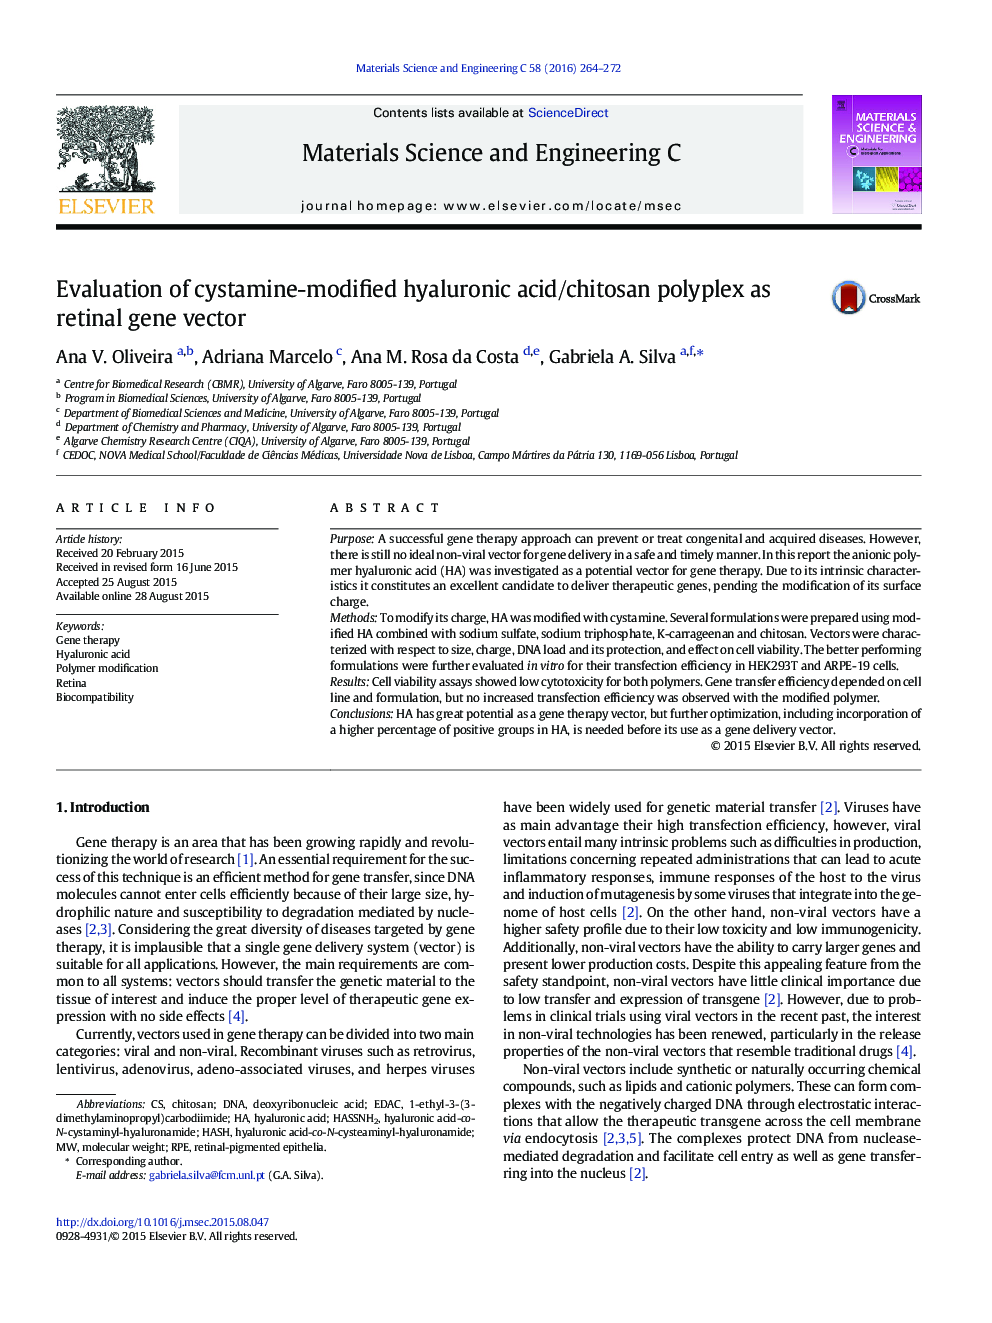 ارزیابی پلی اکسپلکس هیالورونیک اسید / کیتوزان به عنوان یک بردار ژن شبکیه، اصلاح شده است 